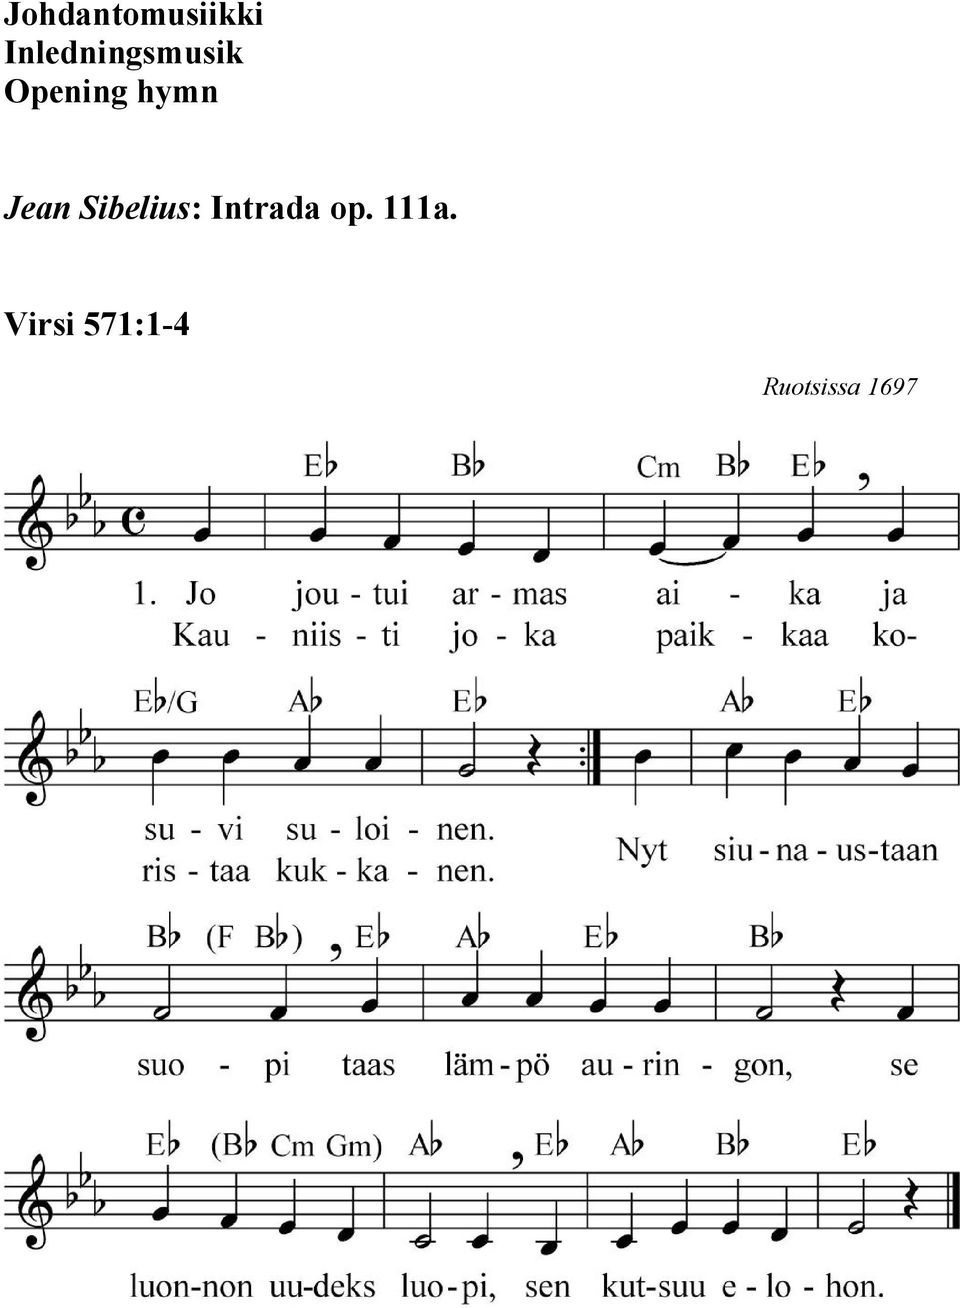 hymn Jean Sibelius: